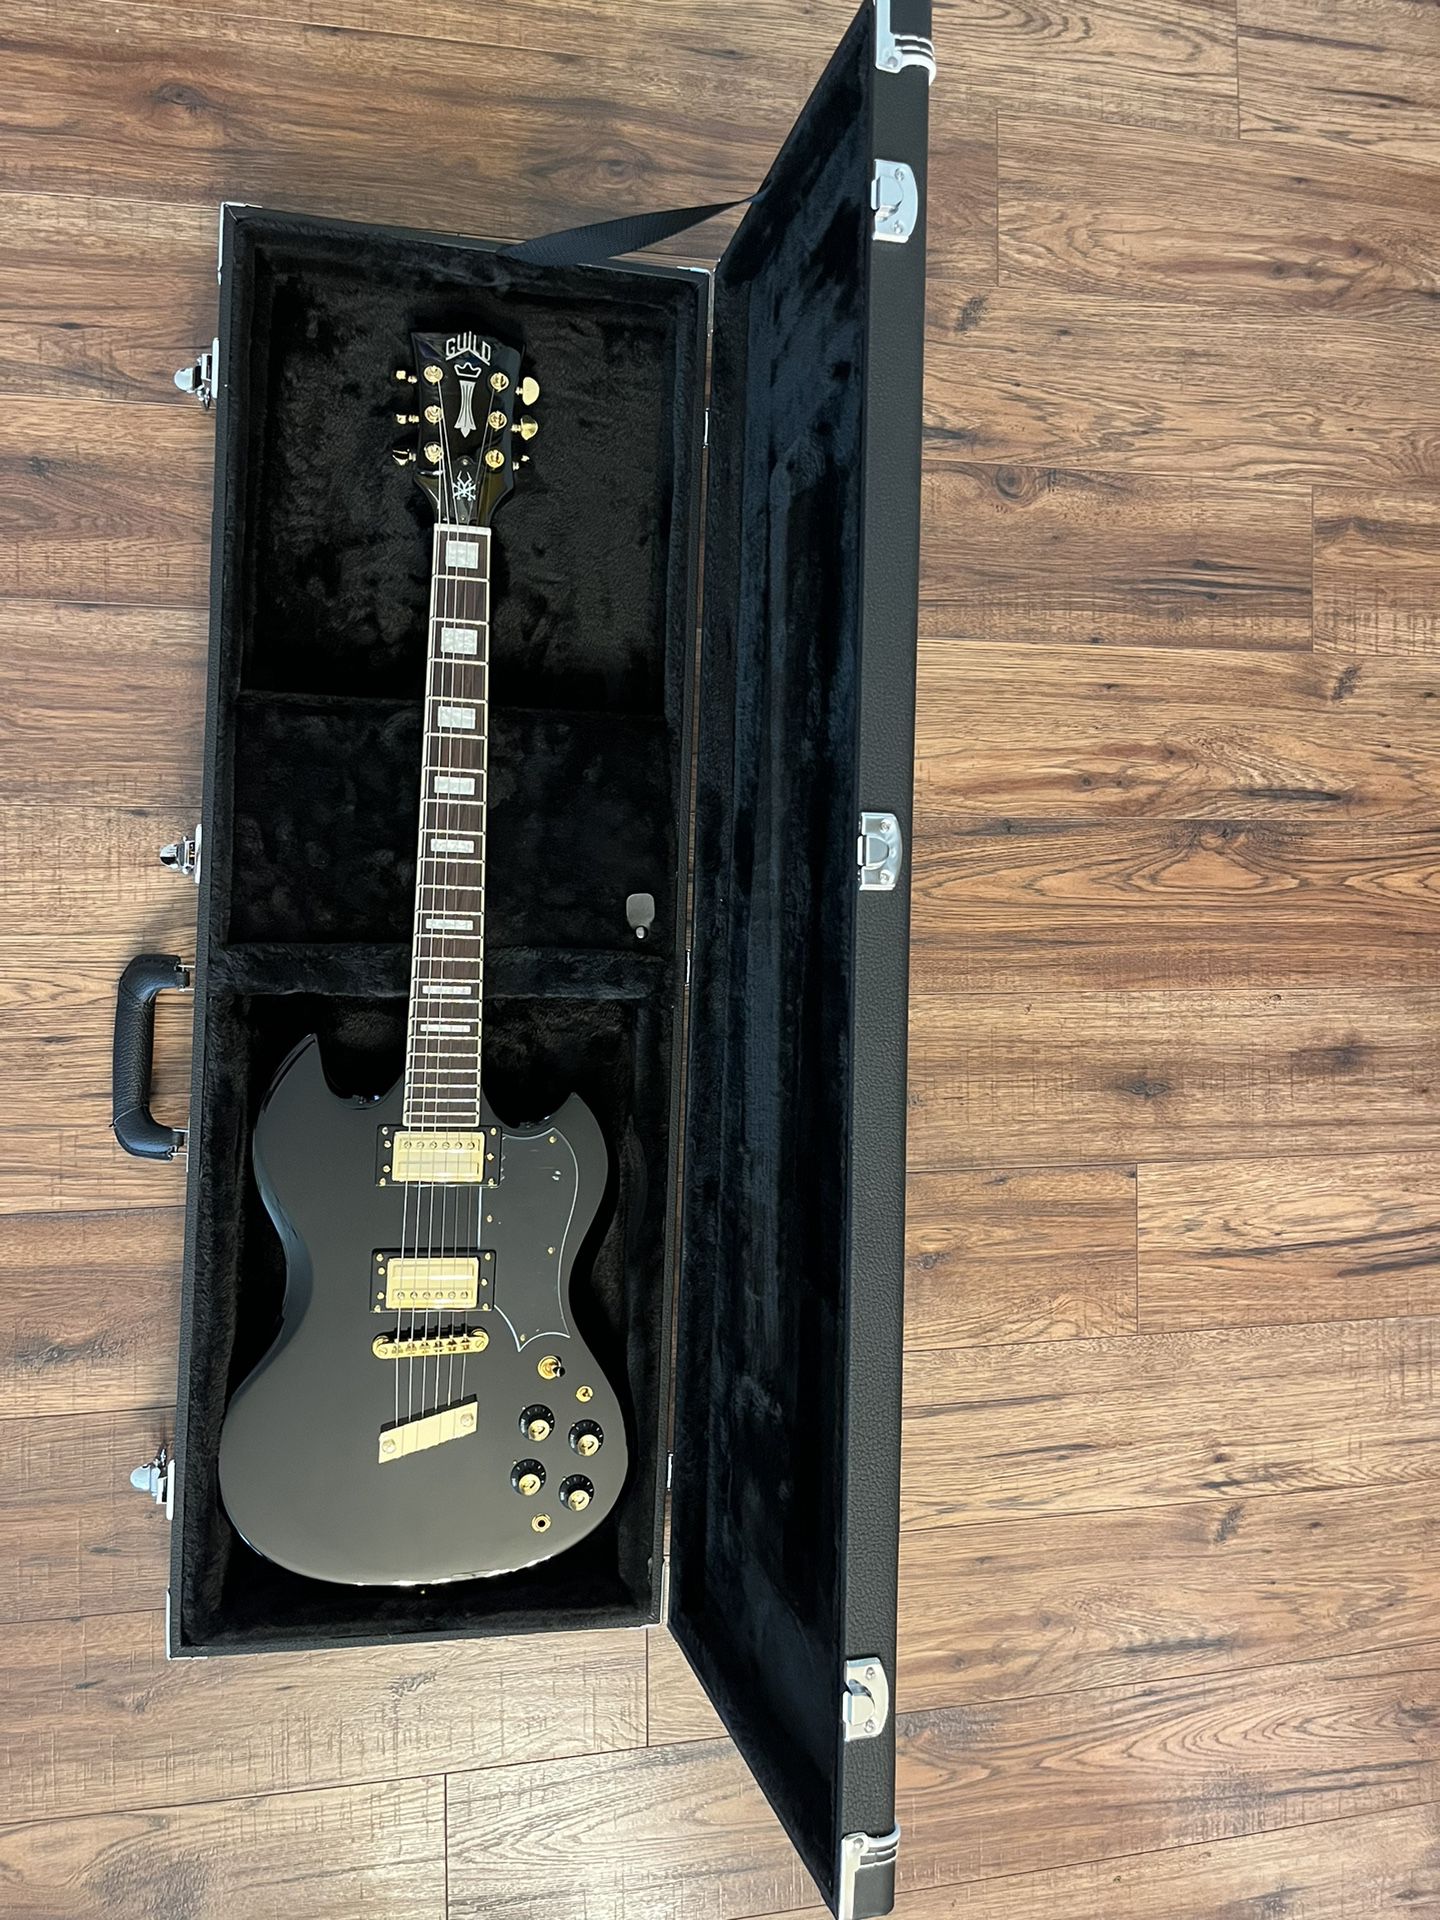 Guild s-100 Kim Thayil signiature model Guitar soundgarden with hardshell case